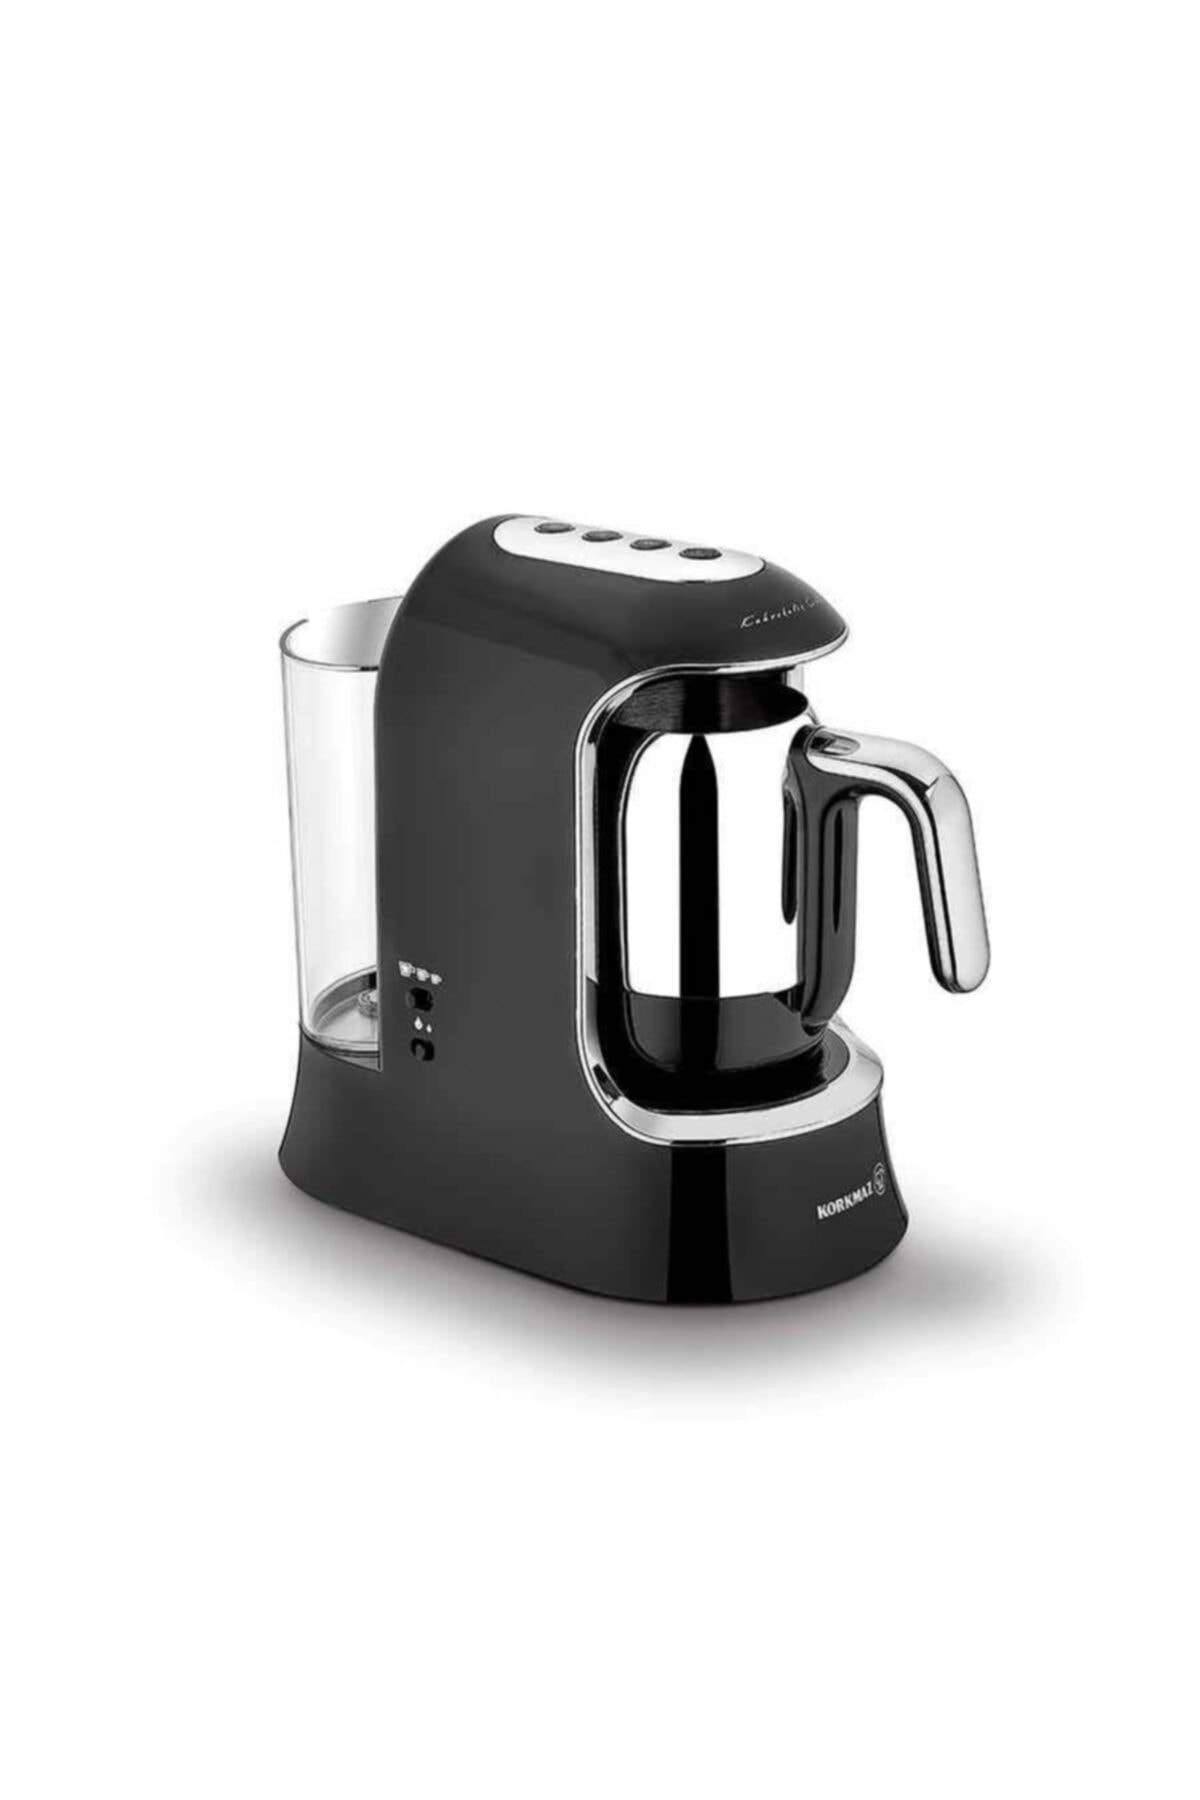 KORKMAZ Kahvekolik Aqua Siyah/krom Otomatik Kahve Makinesi A862